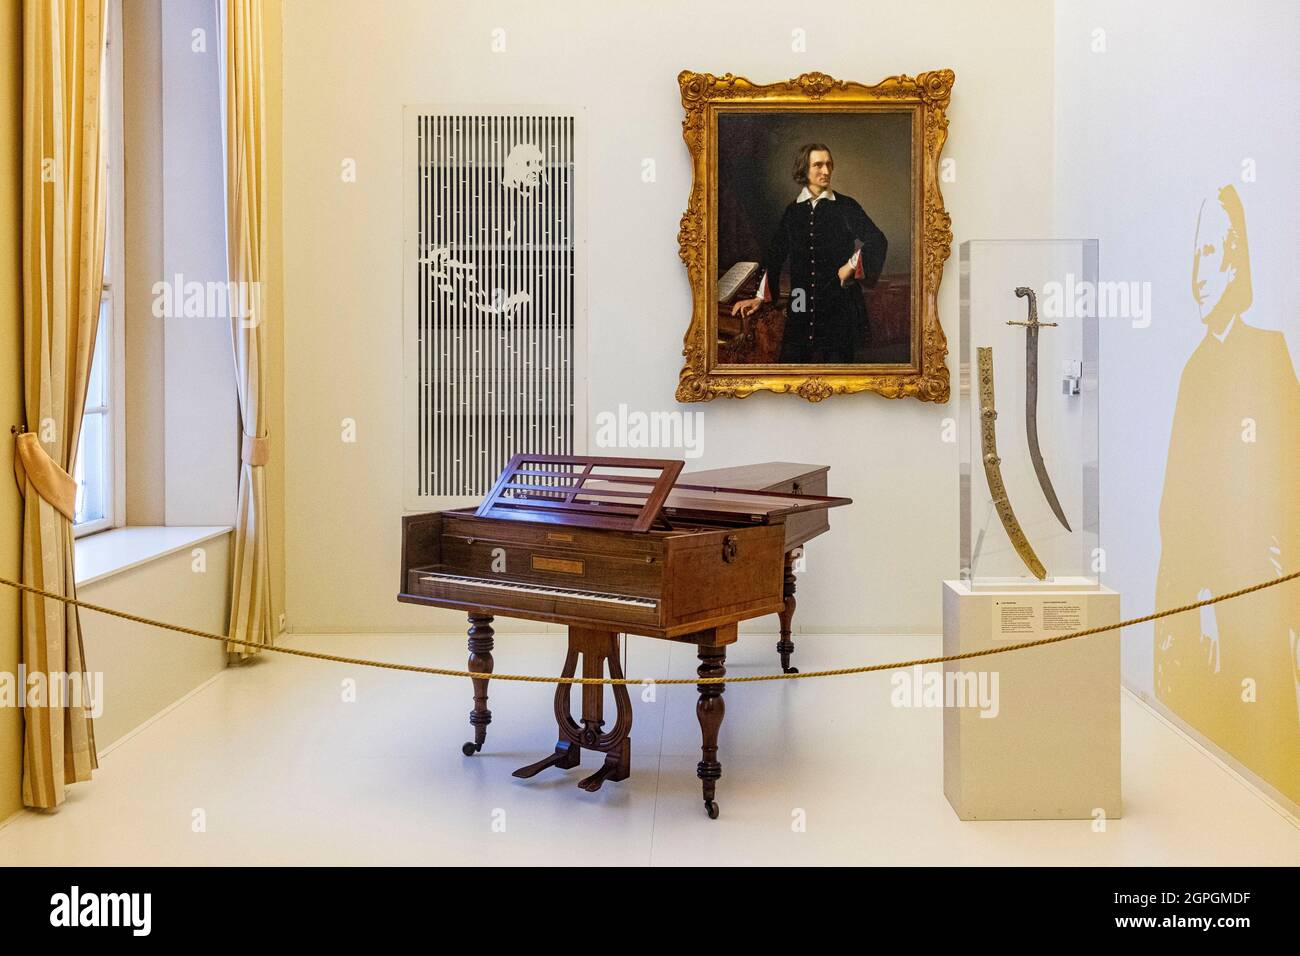 Hongrie, Budapest, classée au patrimoine mondial de l'UNESCO, quartier Pest, Musée national hongrois (Magyar Nemzeti Muzeum), piano et portrait de Franz (Ferenc) Liszt (1811 1886) Banque D'Images